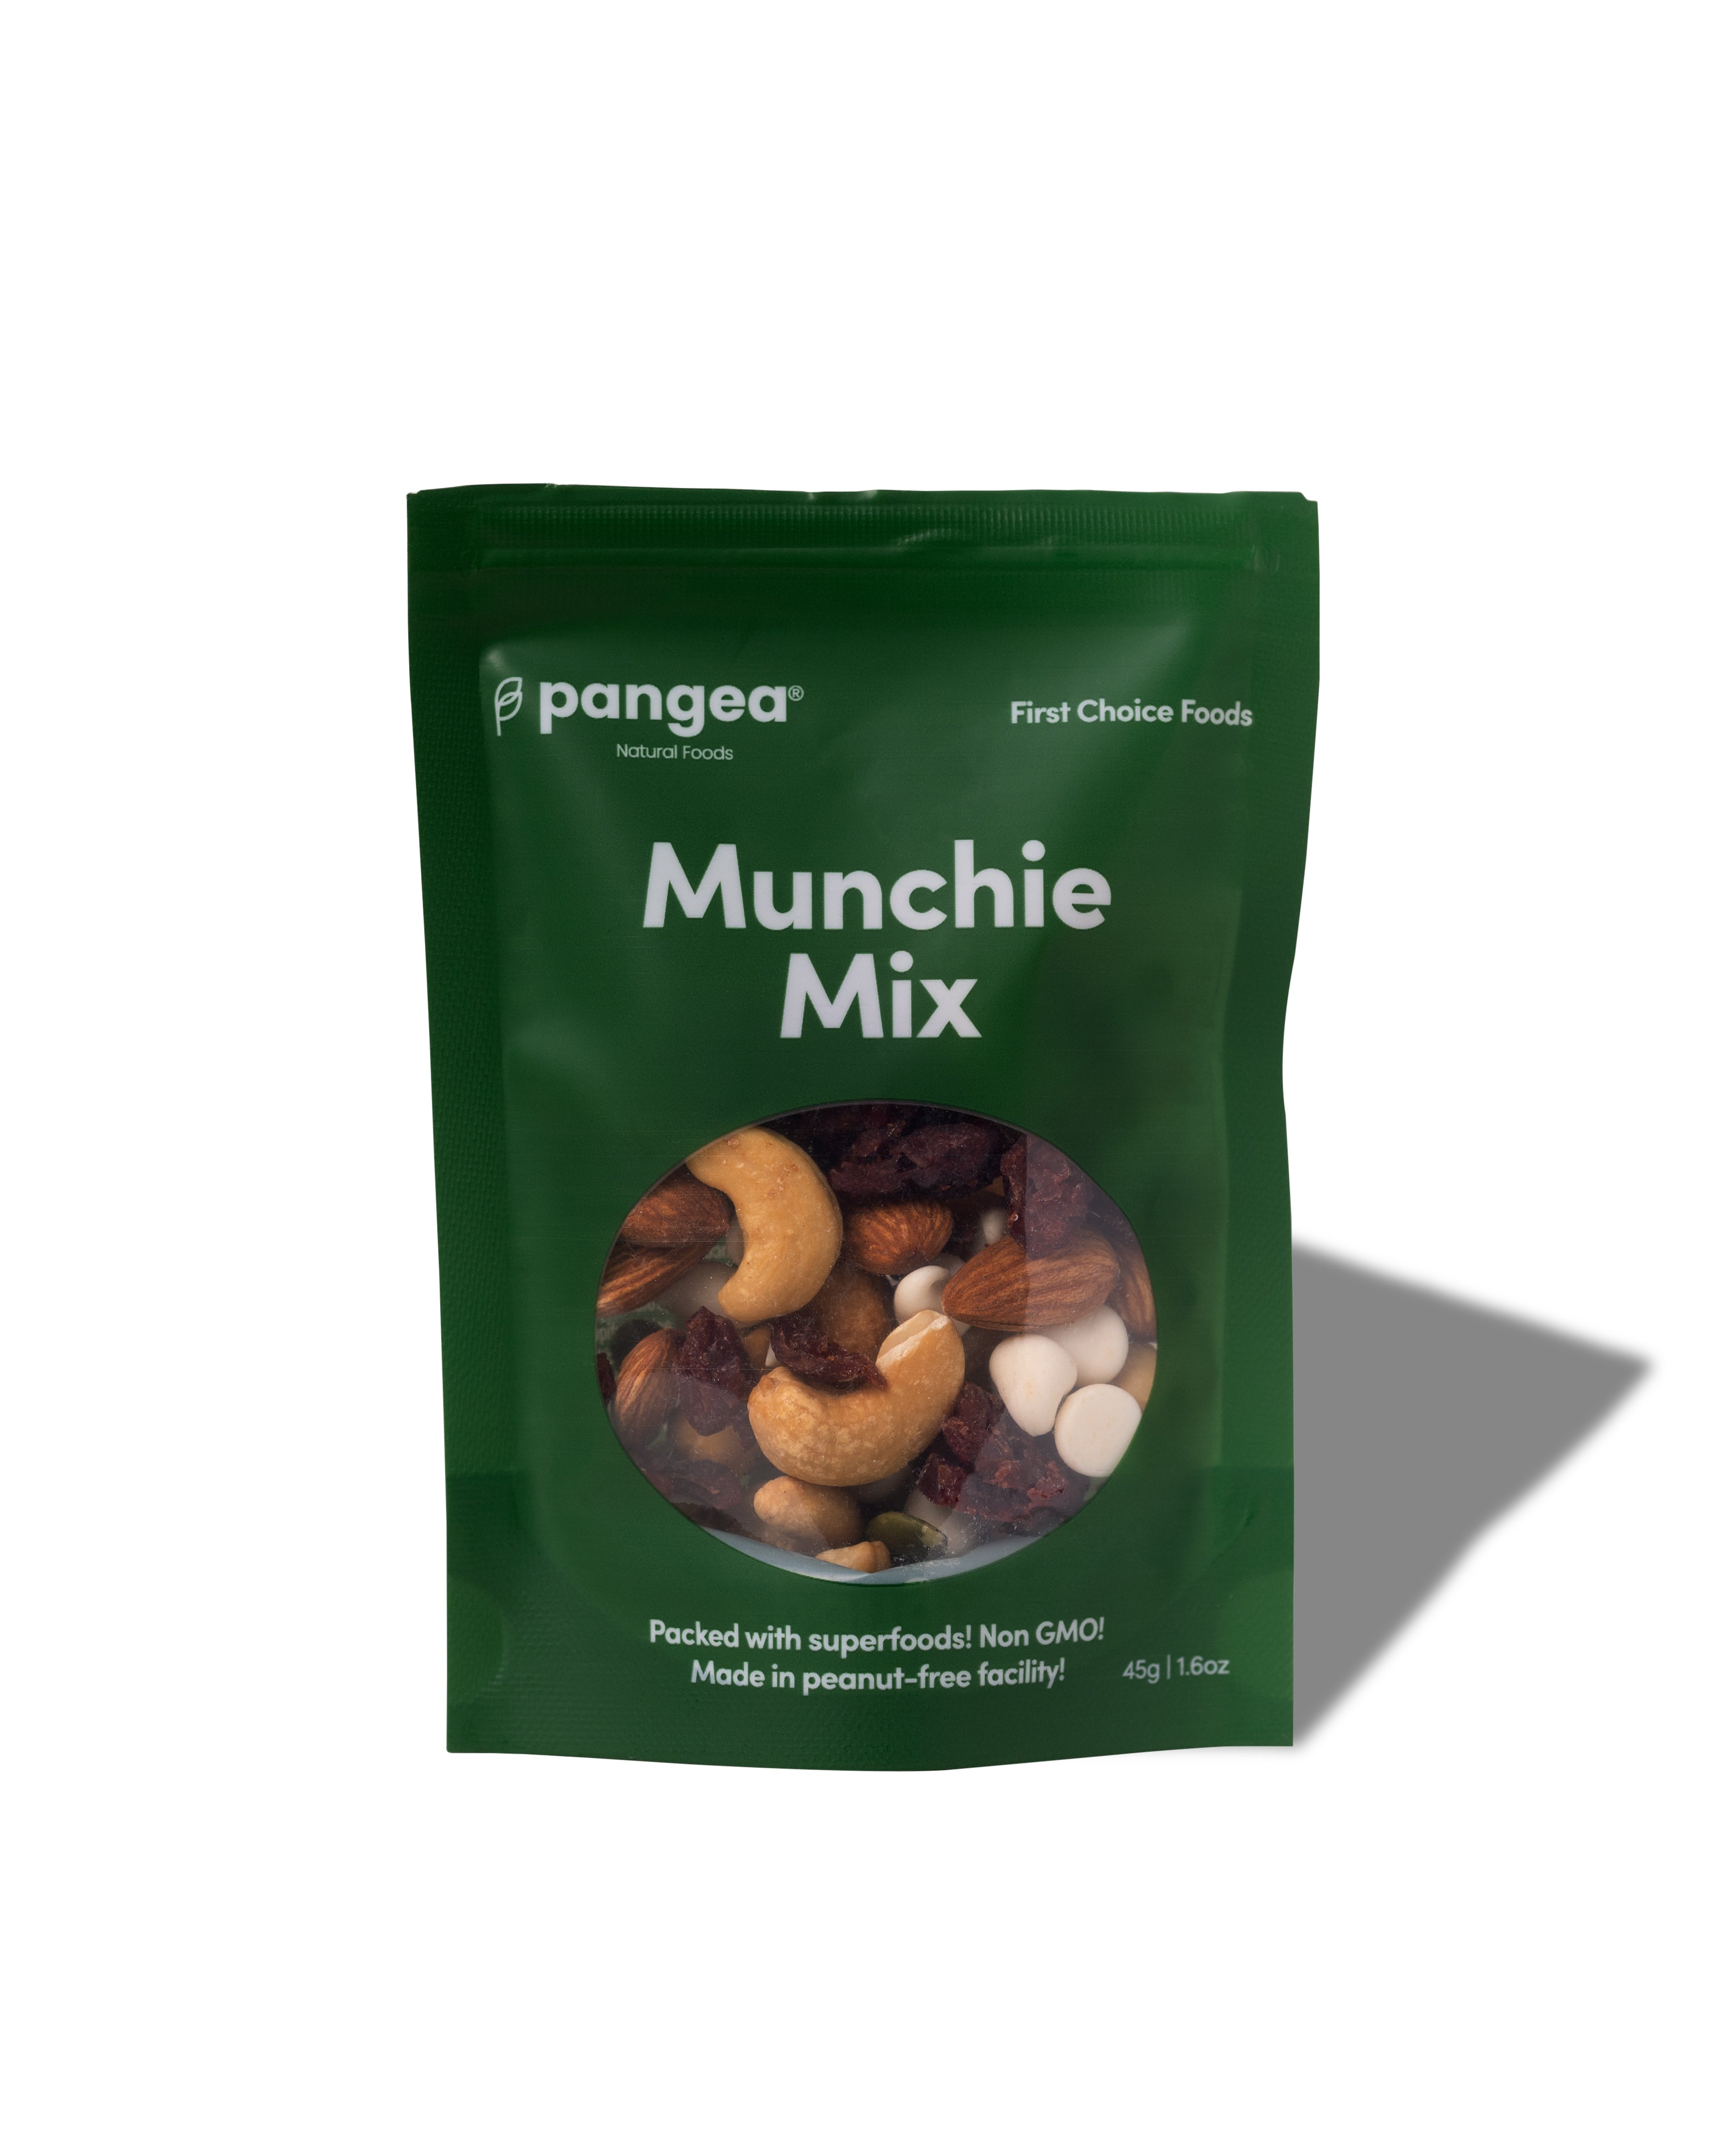 Munchie Mix